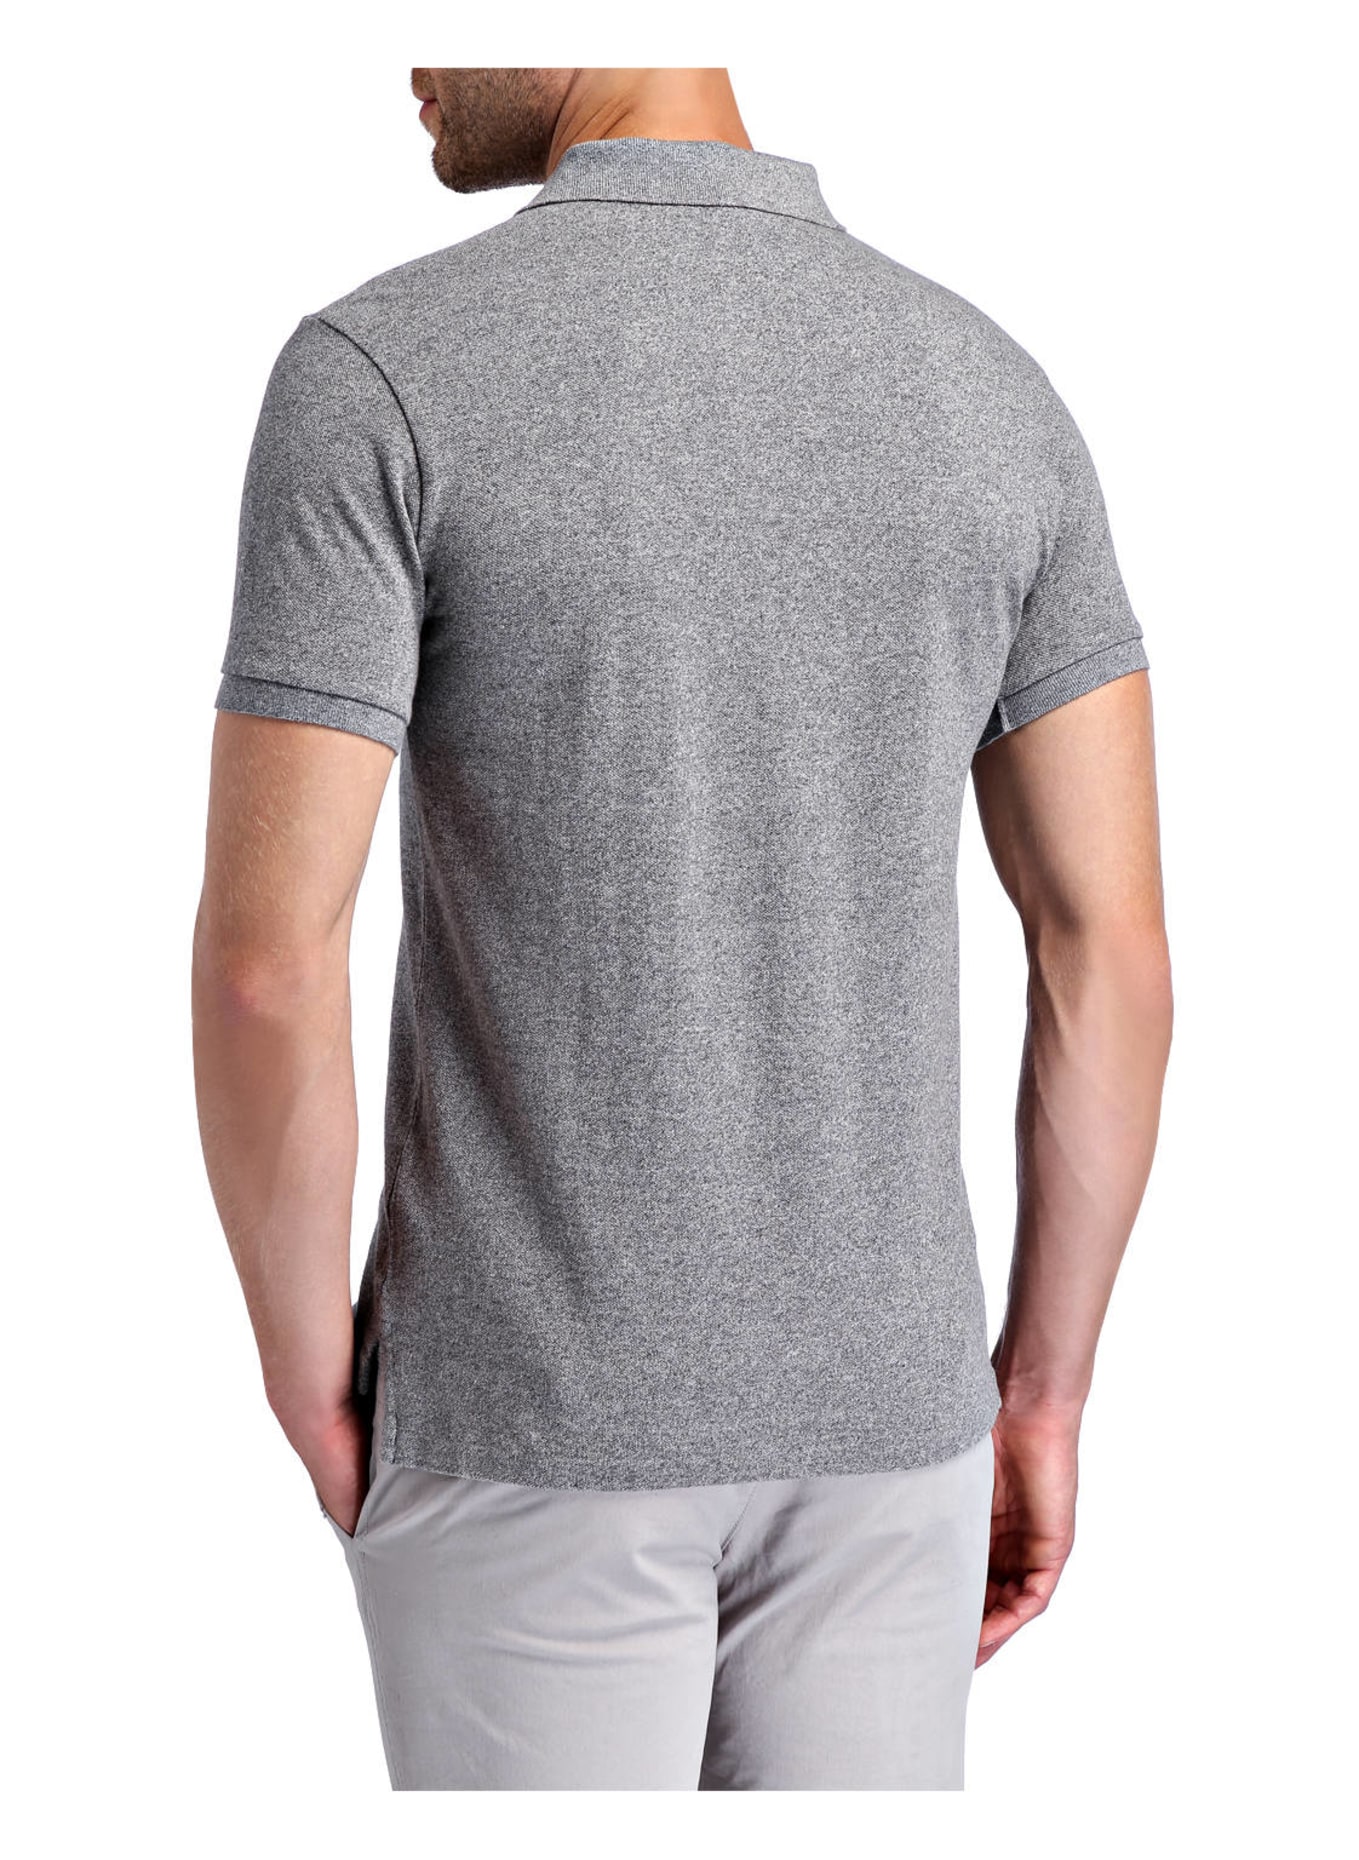 POLO RALPH LAUREN Piqué-Poloshirt Slim Fit, Farbe: GRAU MELIERT (Bild 3)